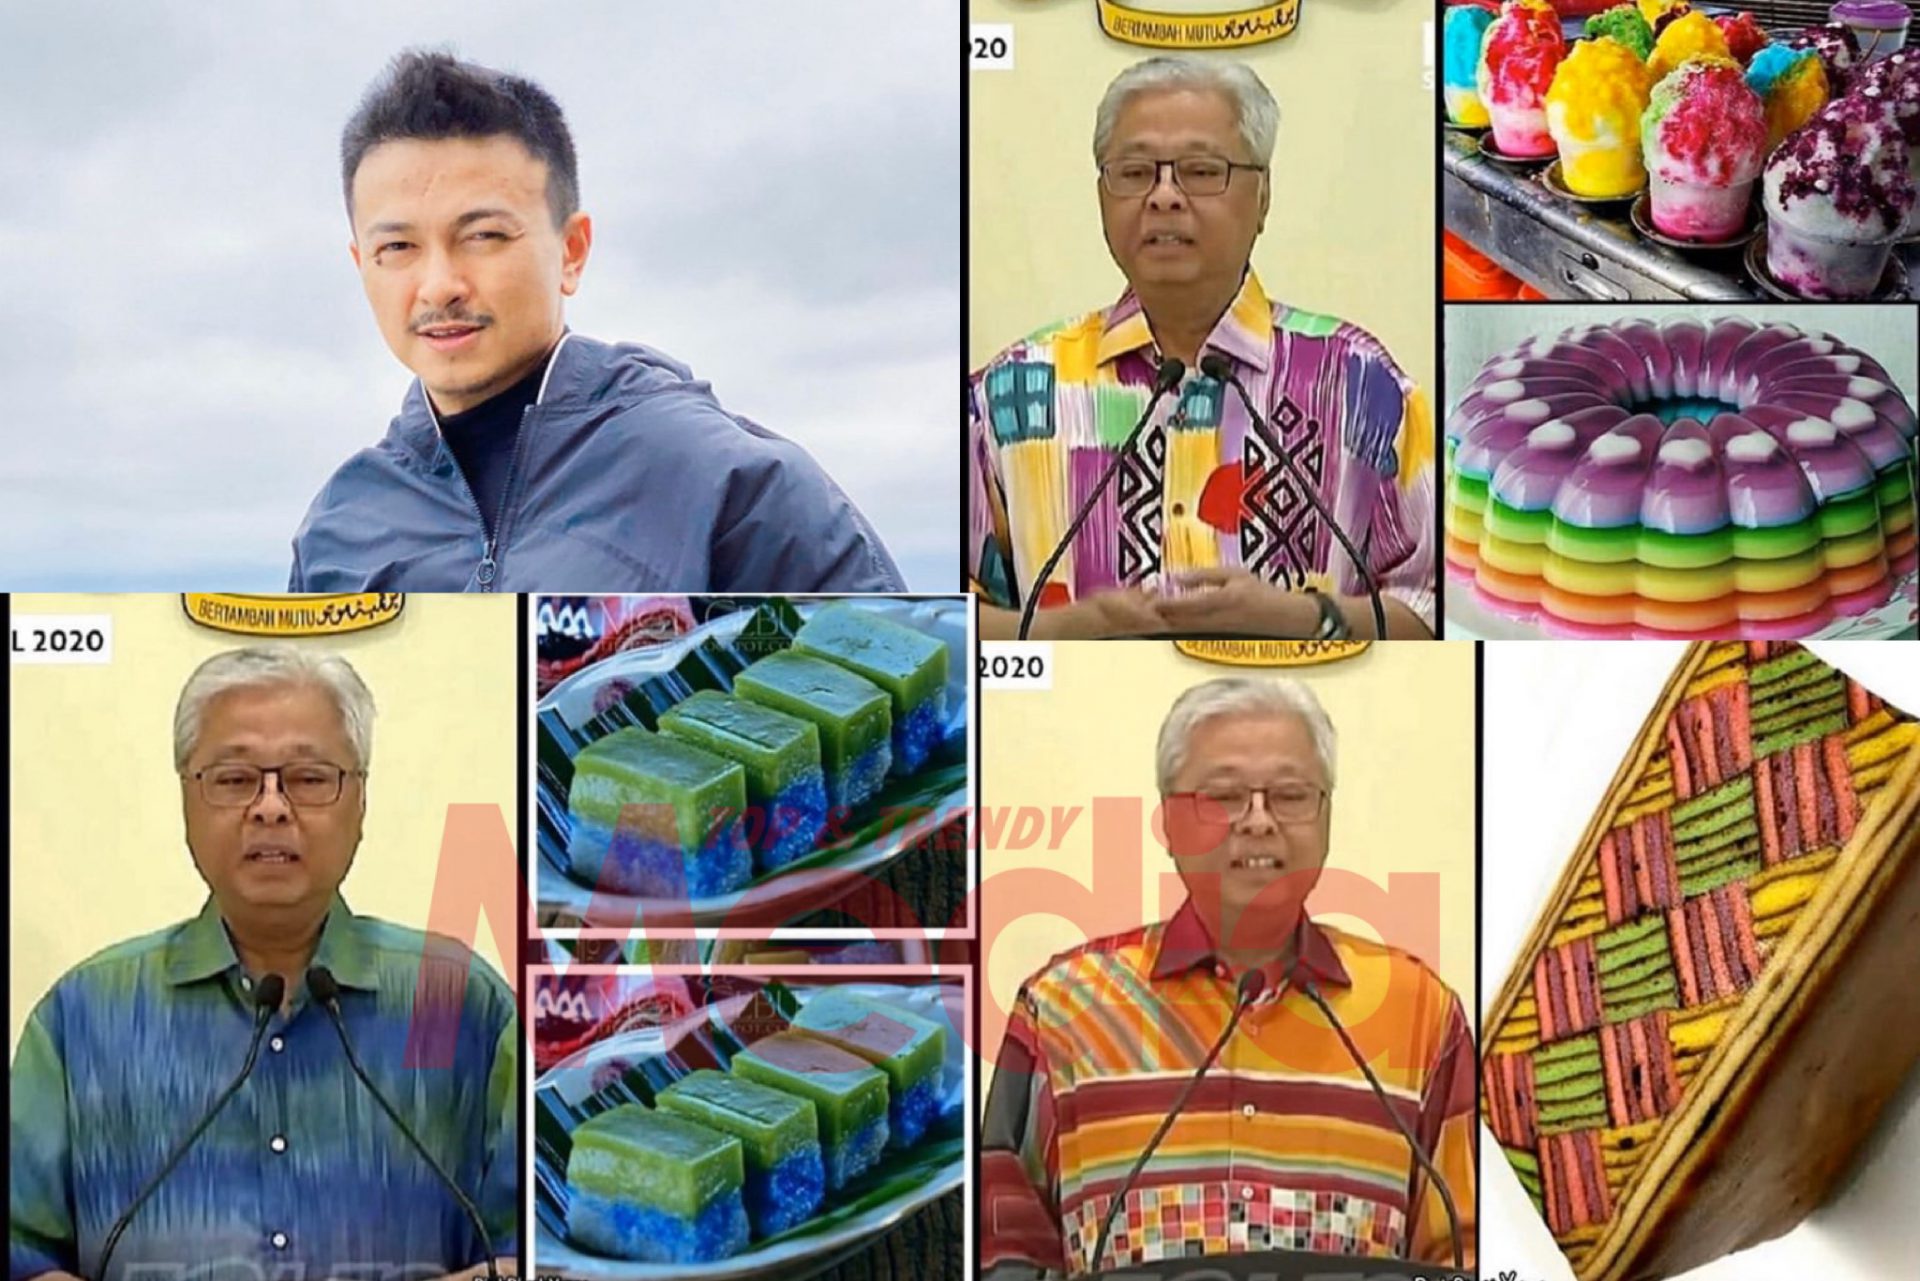 “Datuk Is The New Fashion Icon,” &#8211; Baju Ismail Sabri Disamakan Dengan Kuih Muih, Jovian Mandagie Beri Reaksi